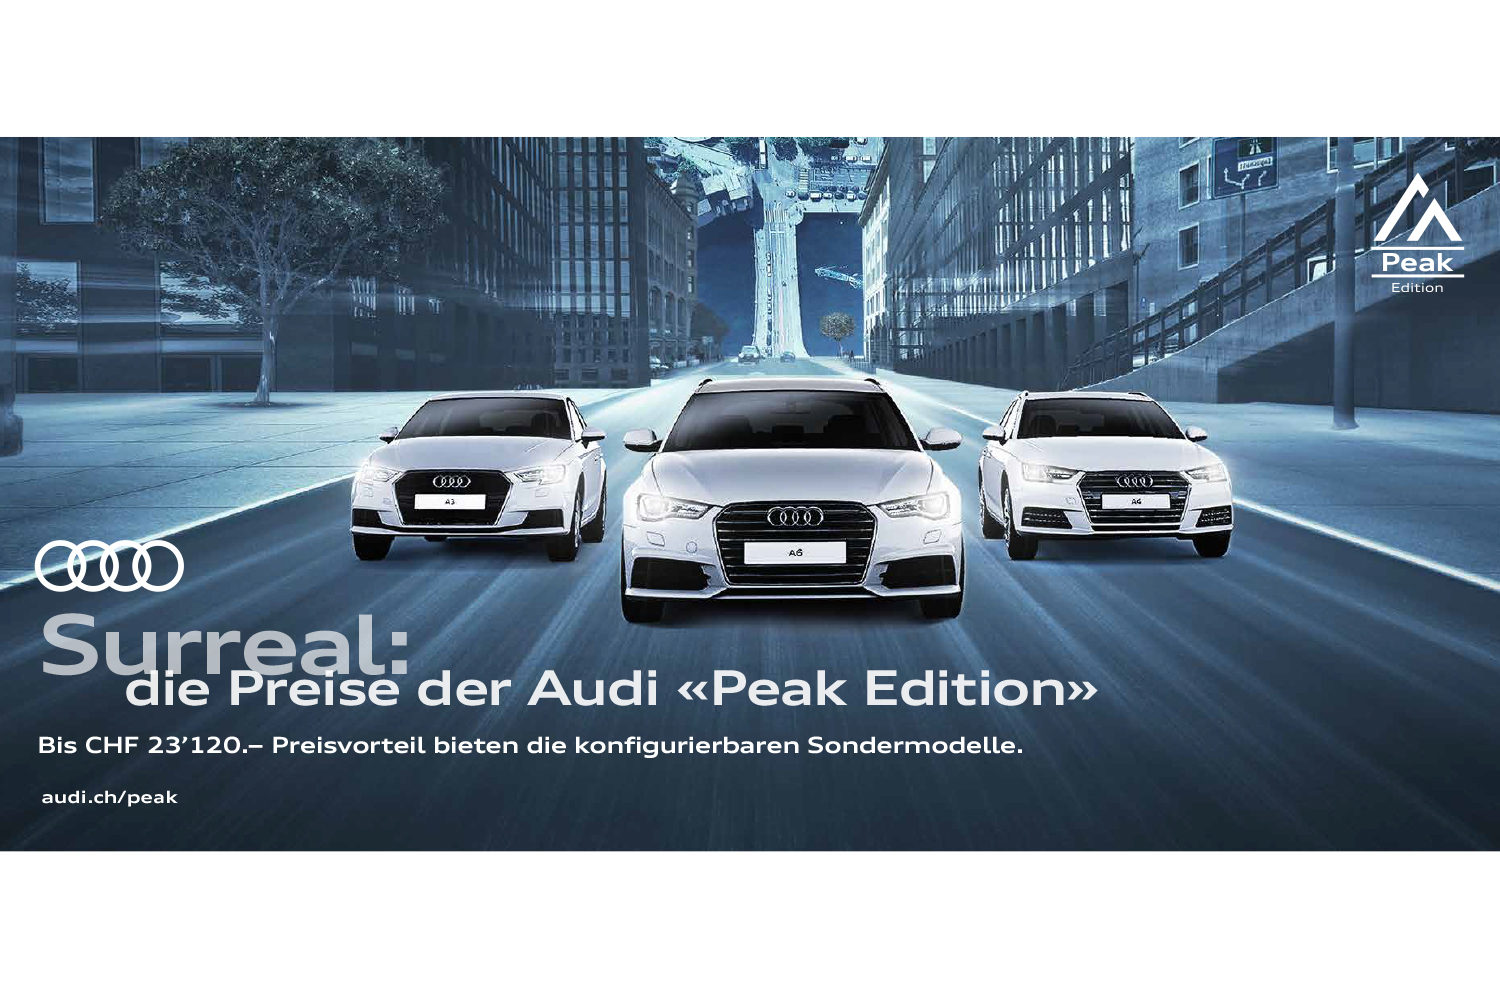 Audi Peak Edition Kampagne Sondermodelle Idee Surreal